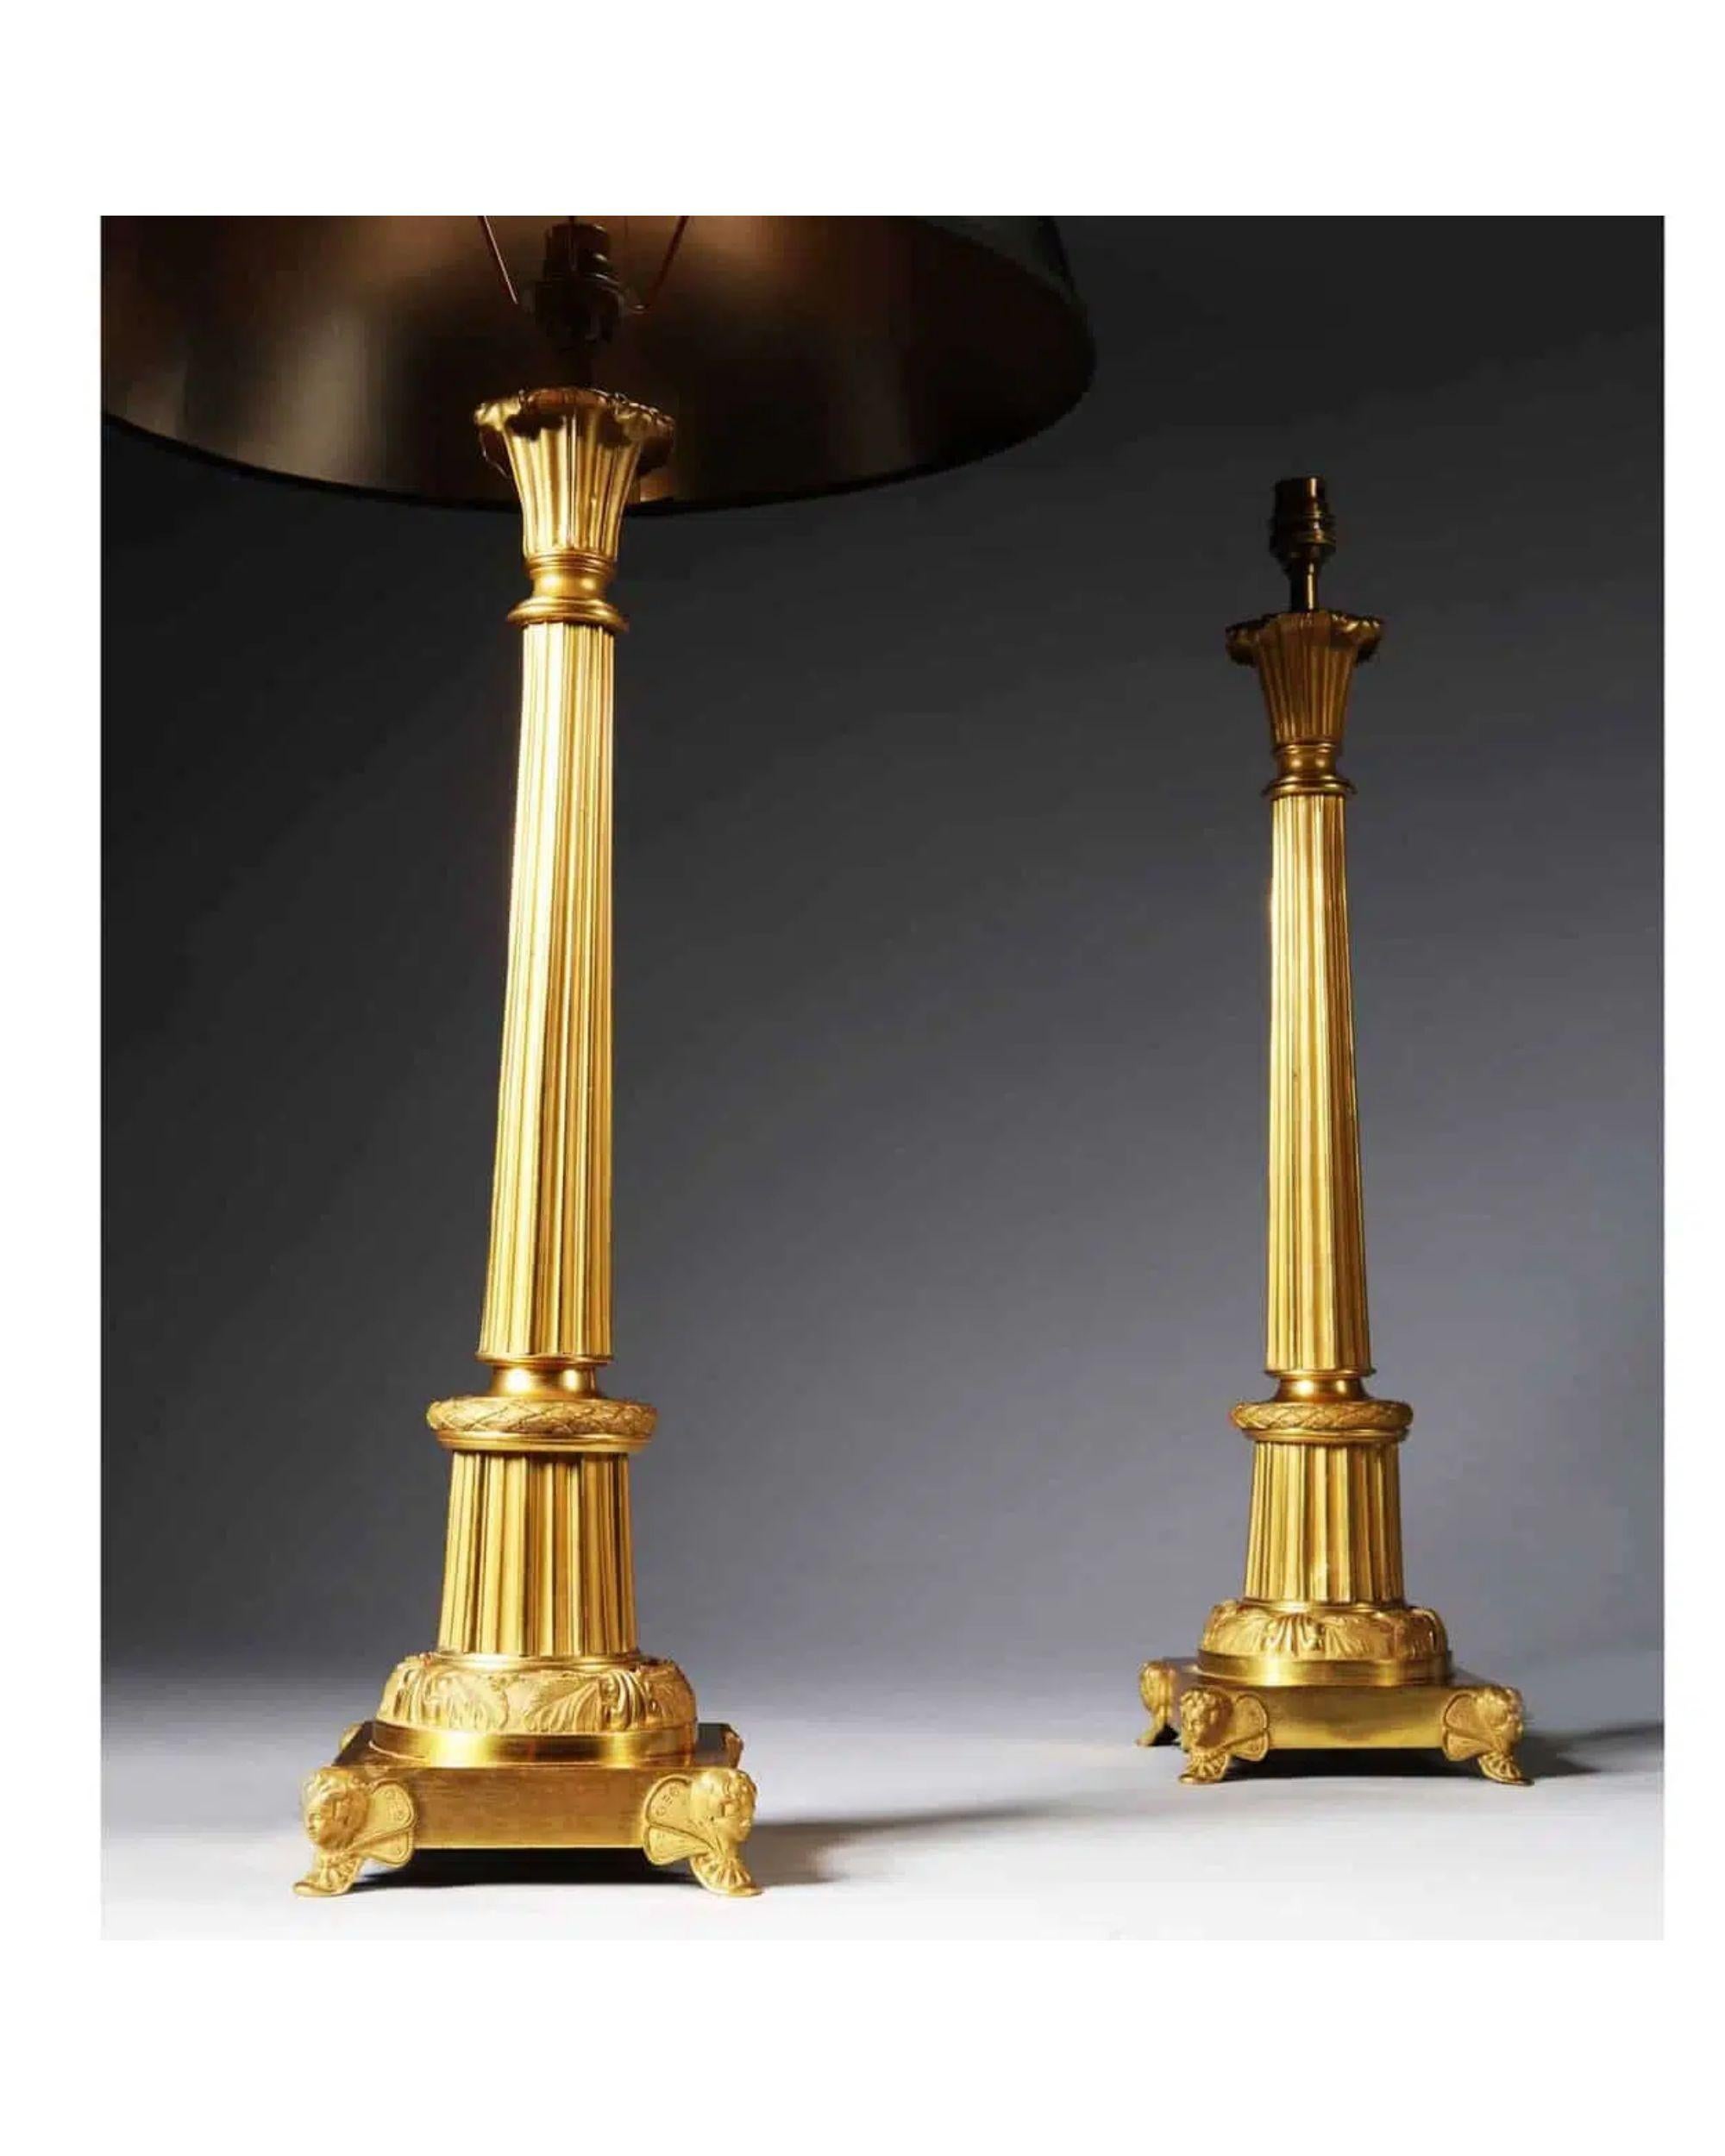 Paar Art Deco vergoldete Bronze und Tole antike Goldsäule Tischlampen.

Auf quadratischen Sockeln stehend, die von geflügelten Amoretten getragen werden, steht die spitz zulaufende, kannelierte Säule mit brüniertem Gold auf einer gestuften, runden,